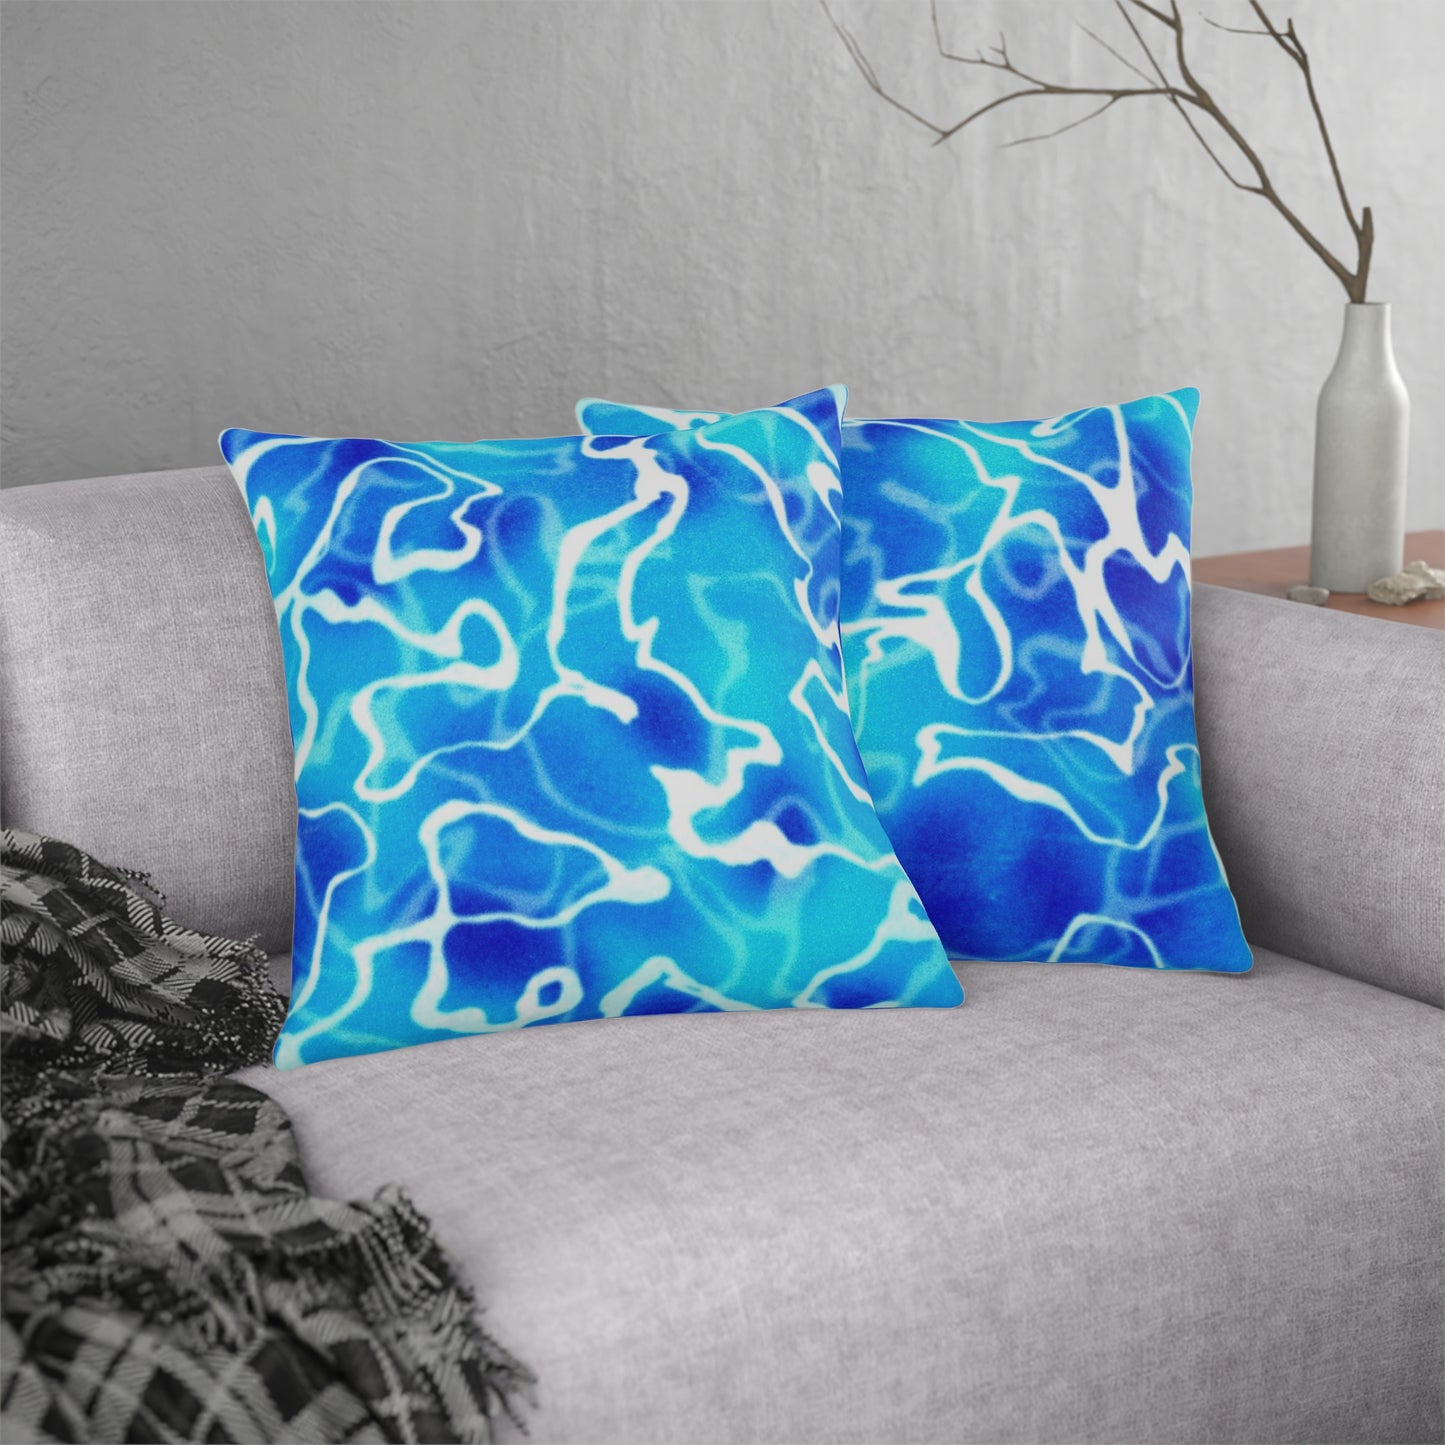 Water blue Waterproof Pillows